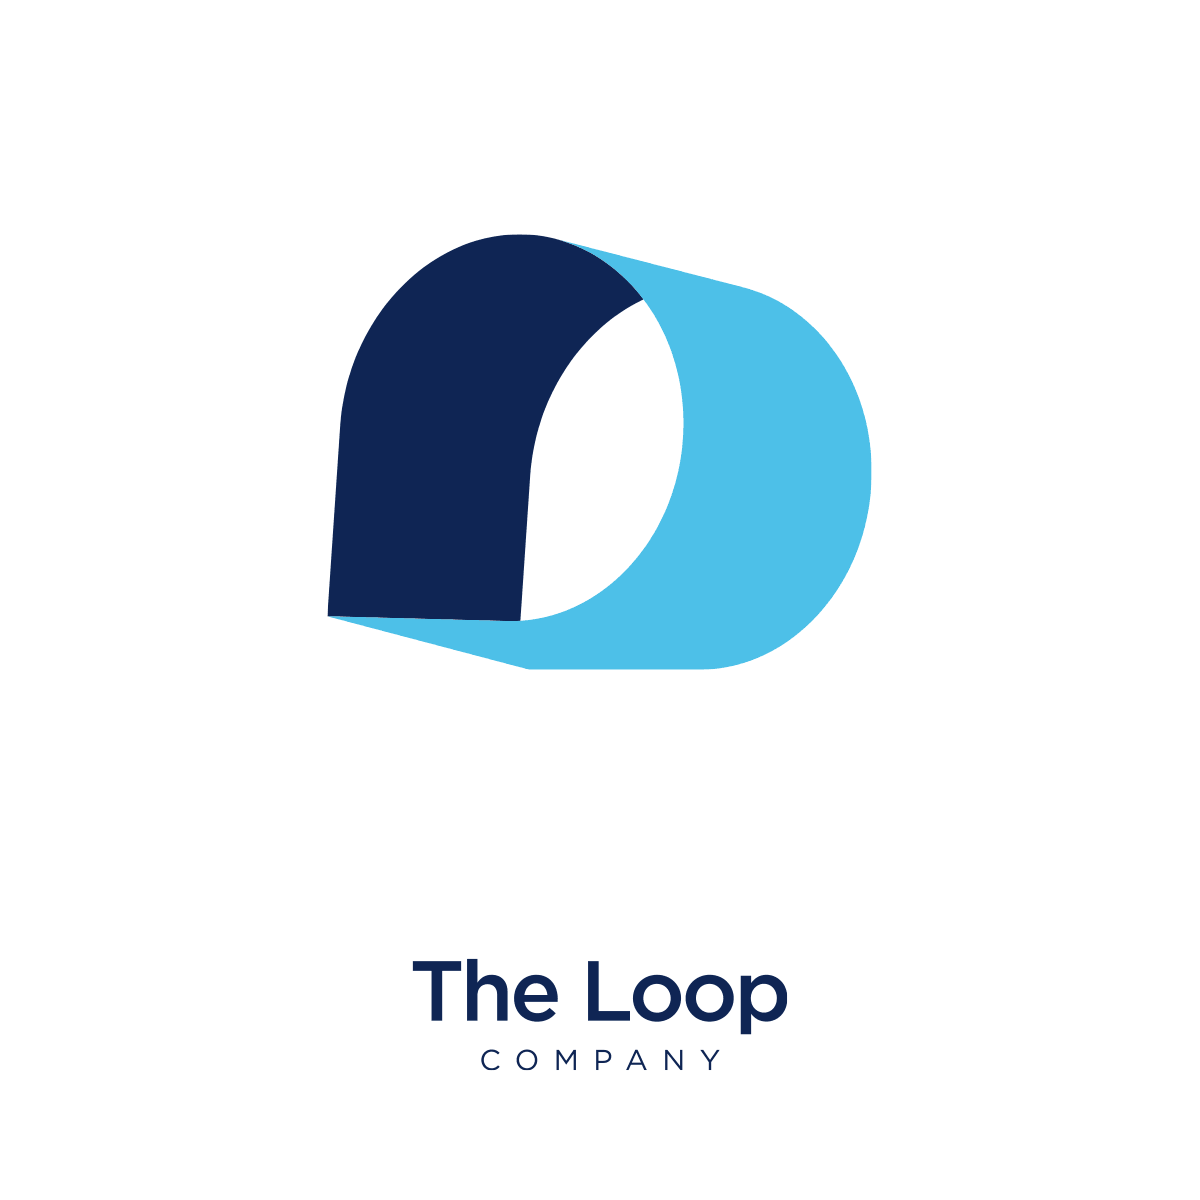 The Loop Company logo